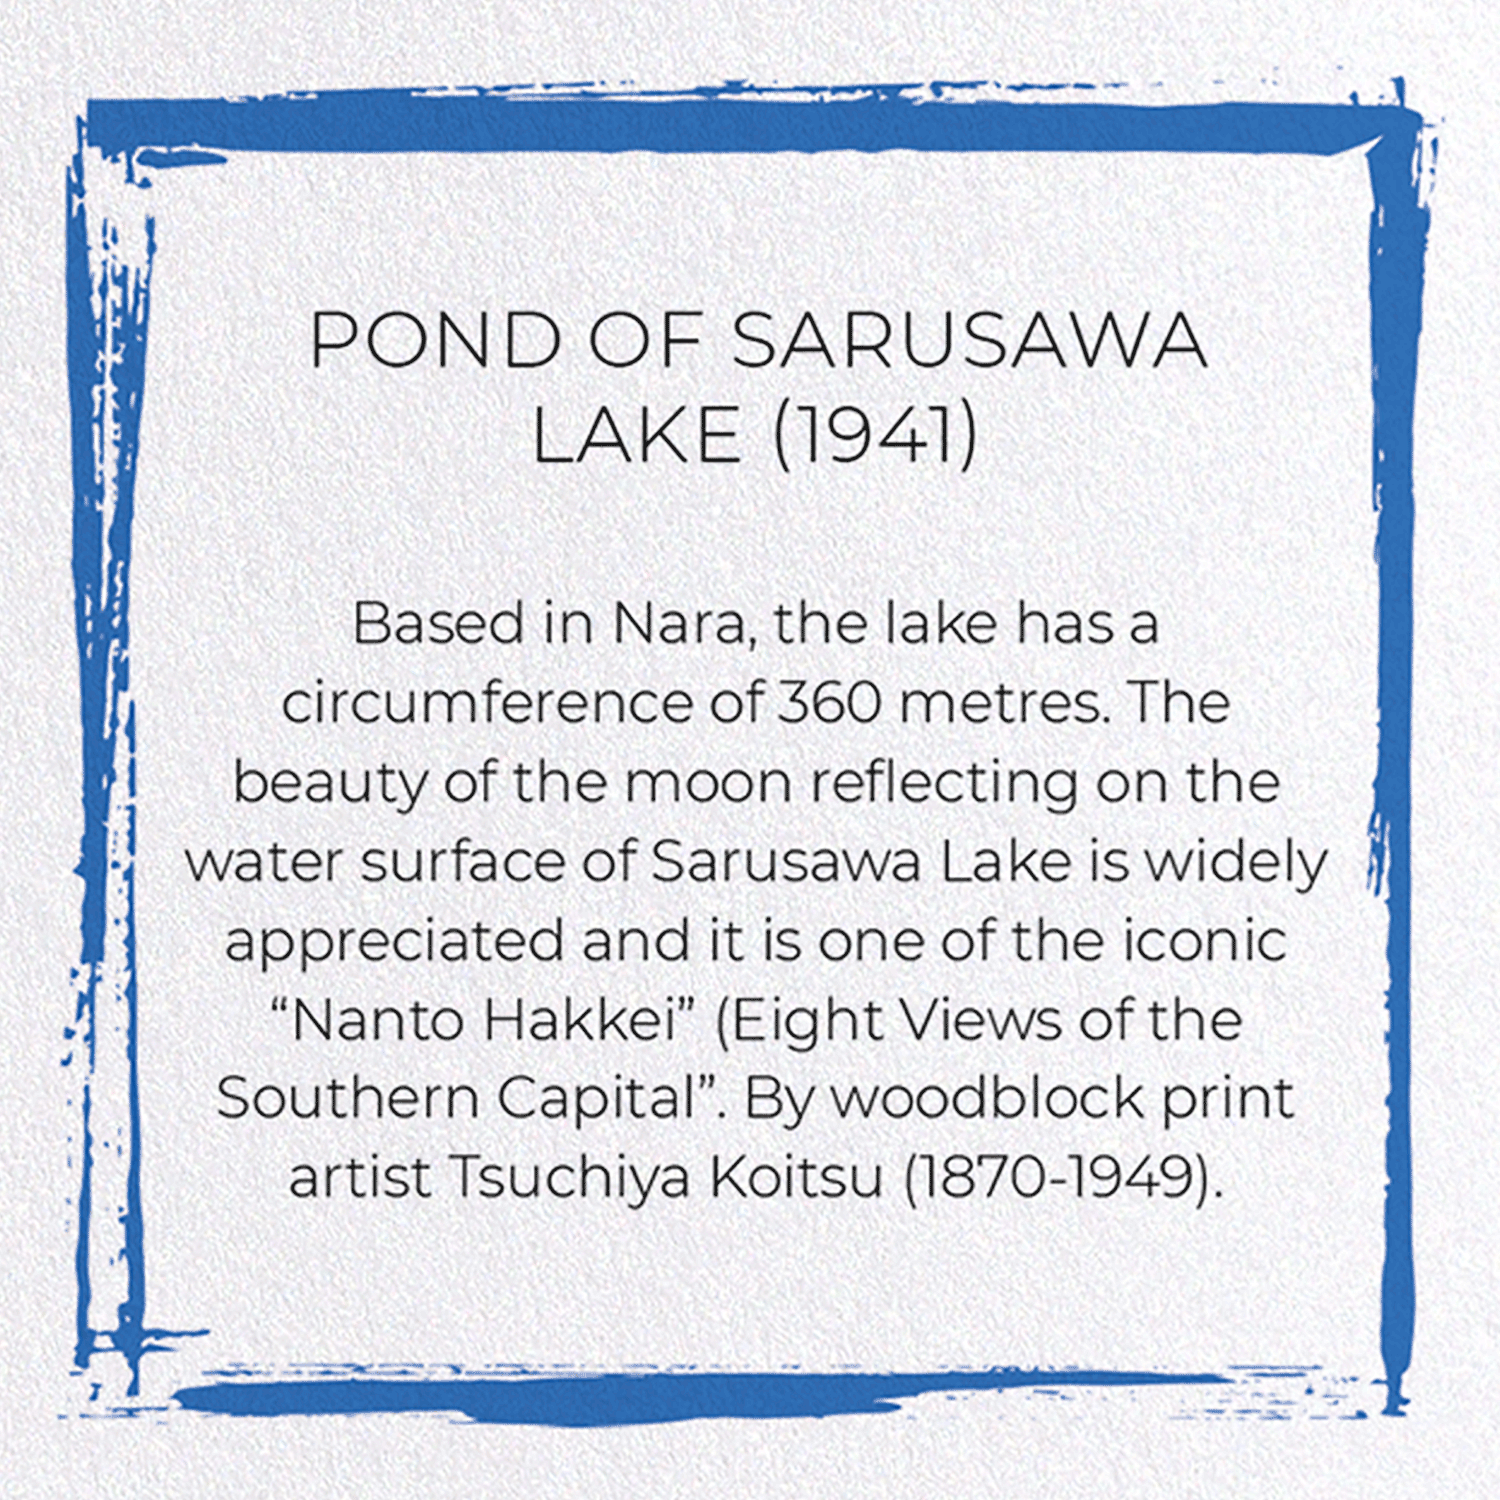 POND OF SARUSAWA LAKE (1941): Japanese Greeting Card